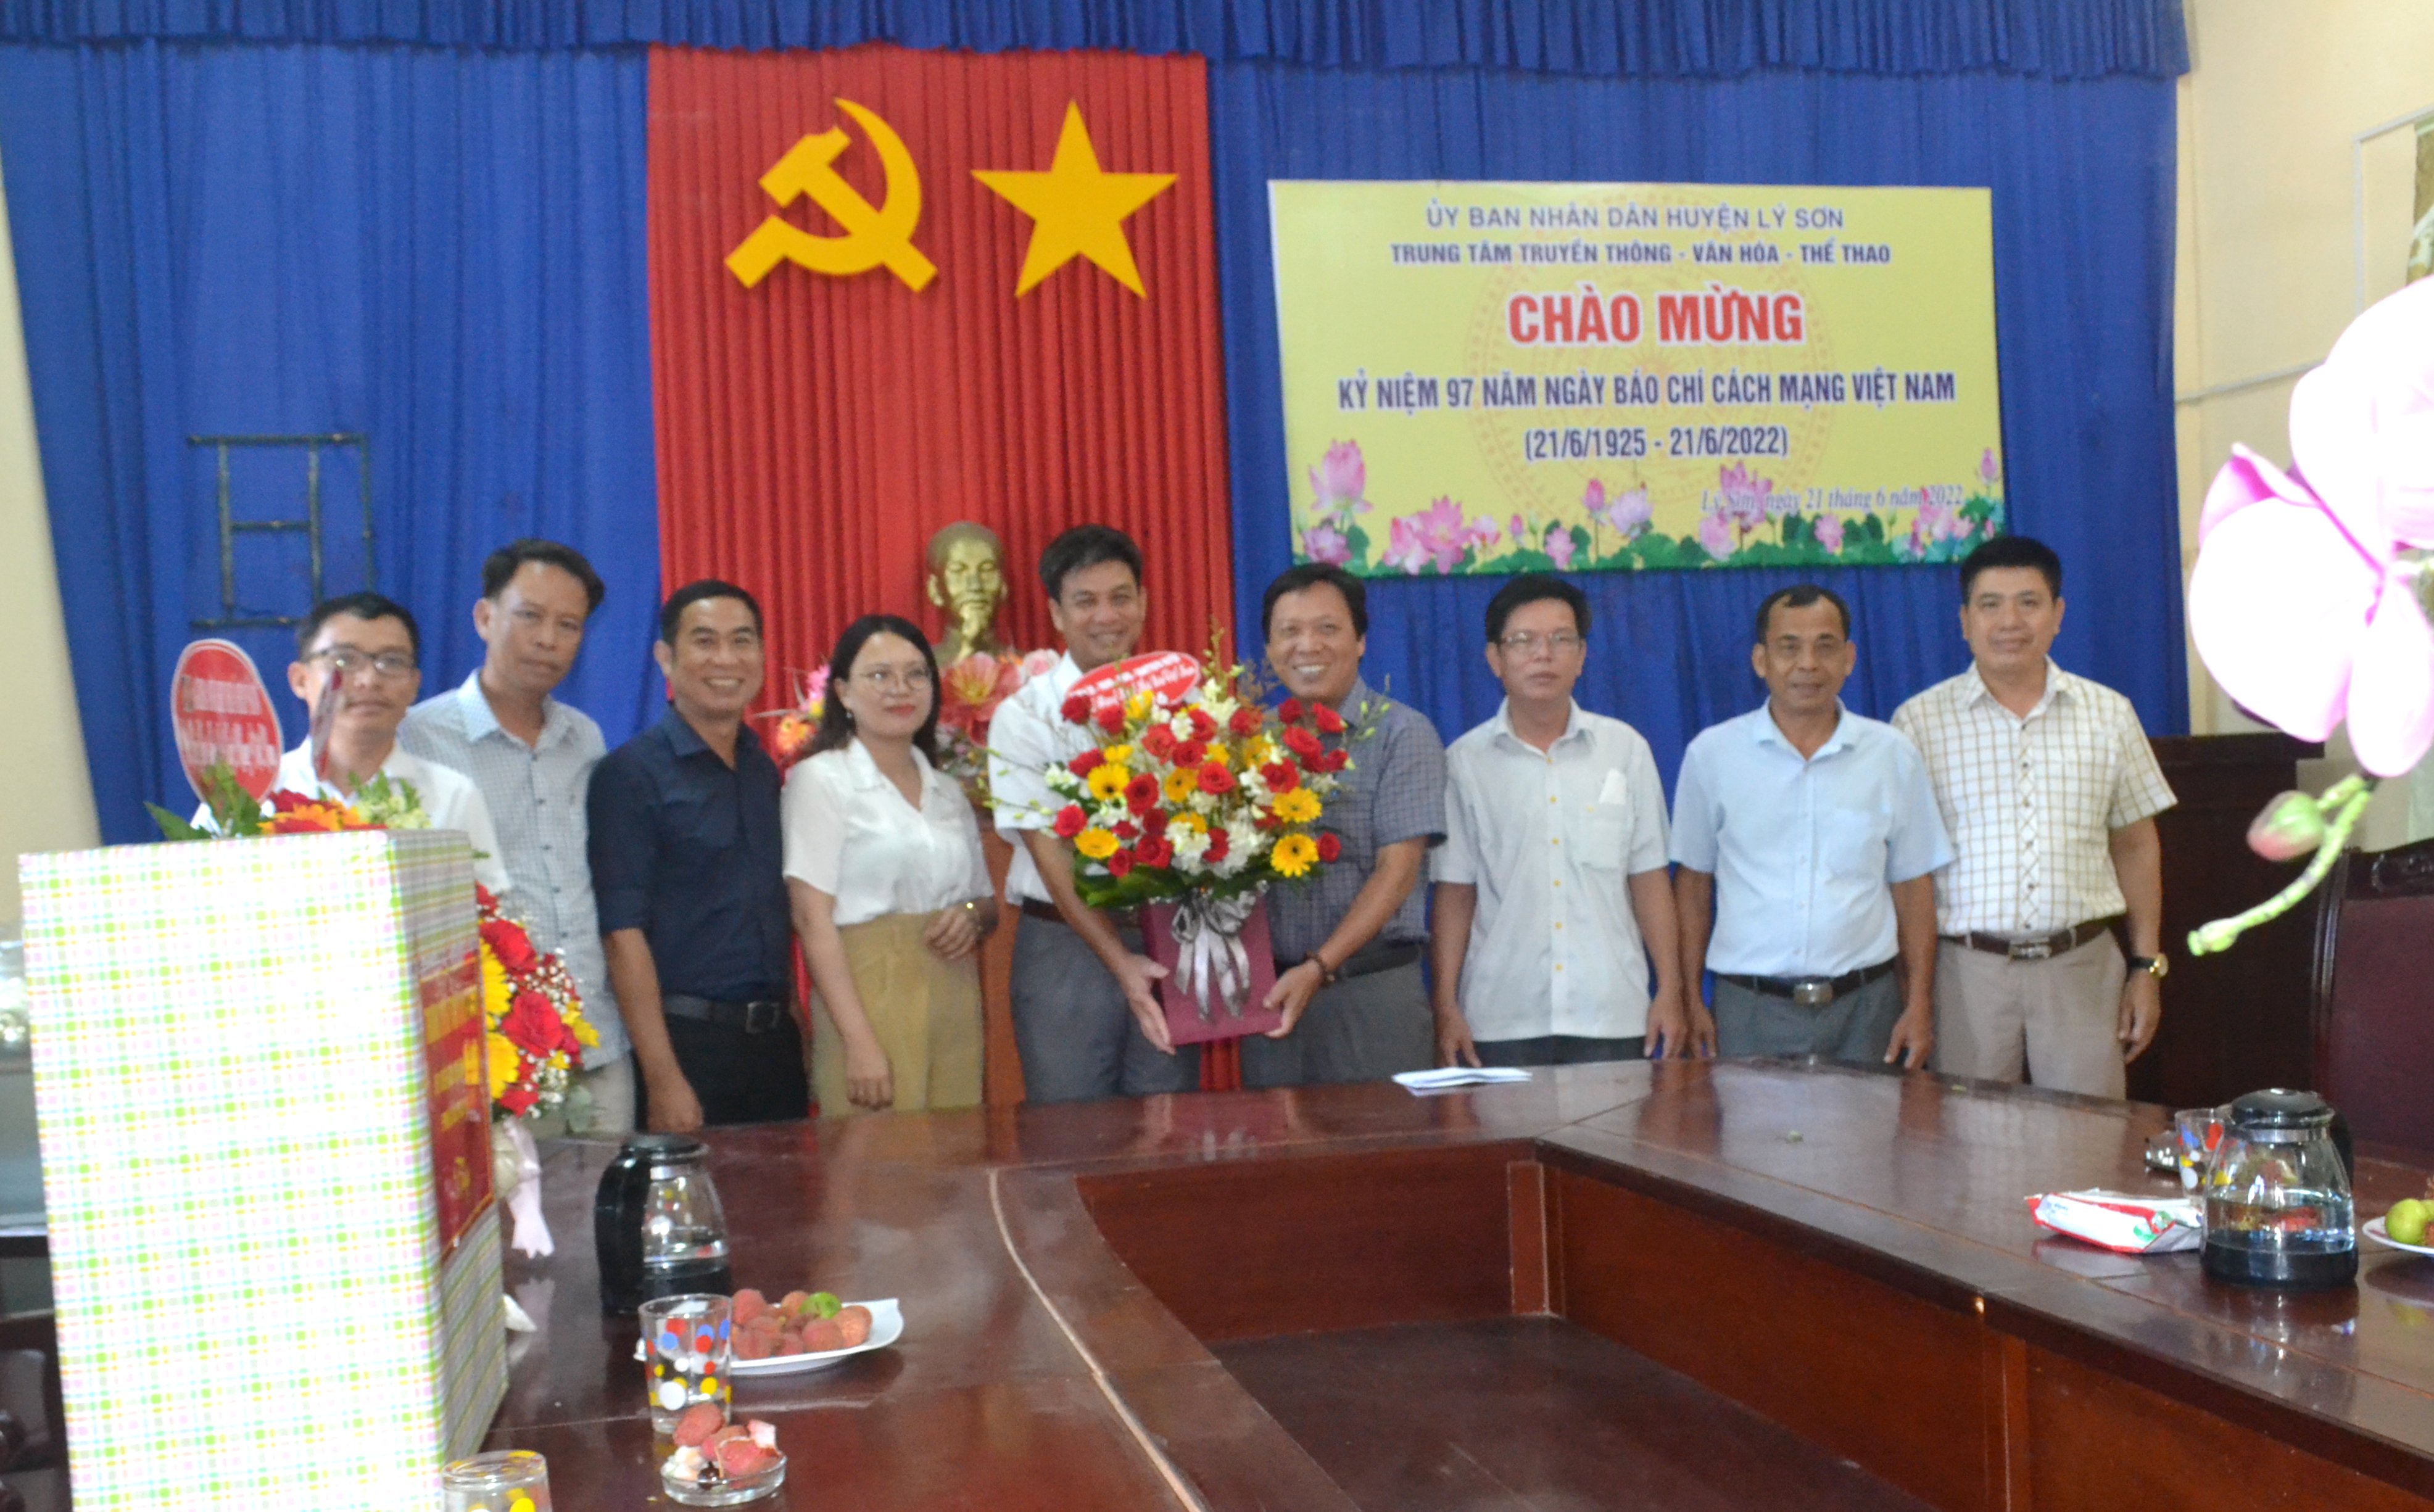 Lãnh đạo huyện thăm chúc mừng Trung tâm Truyền thông – Văn hóa – Thể thao huyện nhân Ngày Báo chí Cách mạng Việt Nam